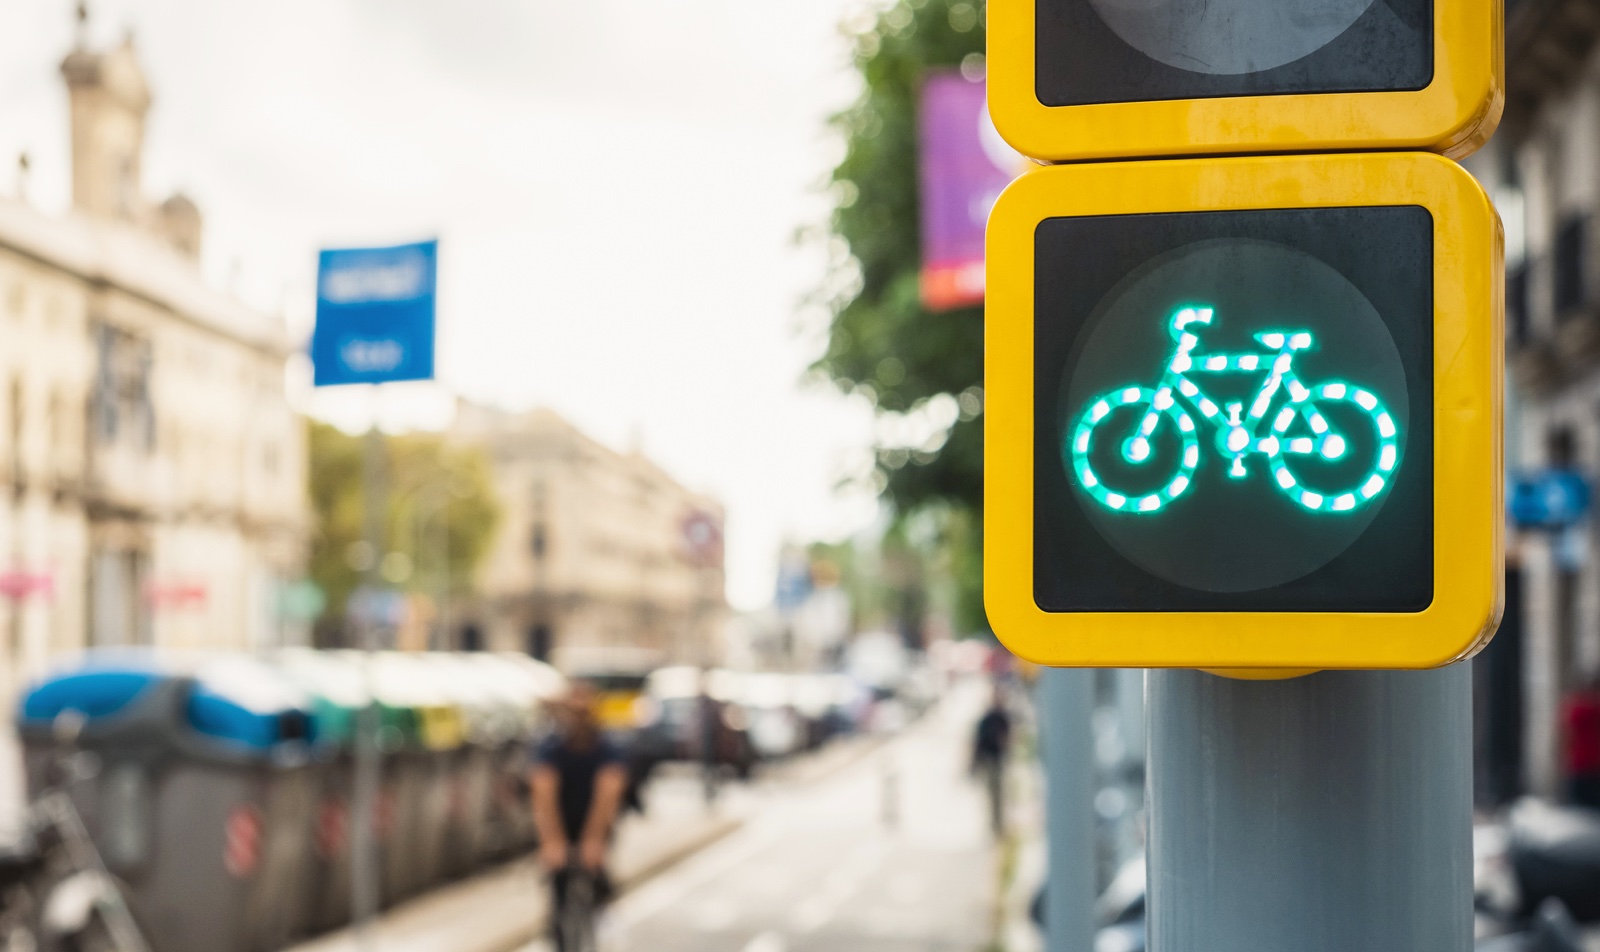 Señales de tráfico dirigidas a los ciclistas